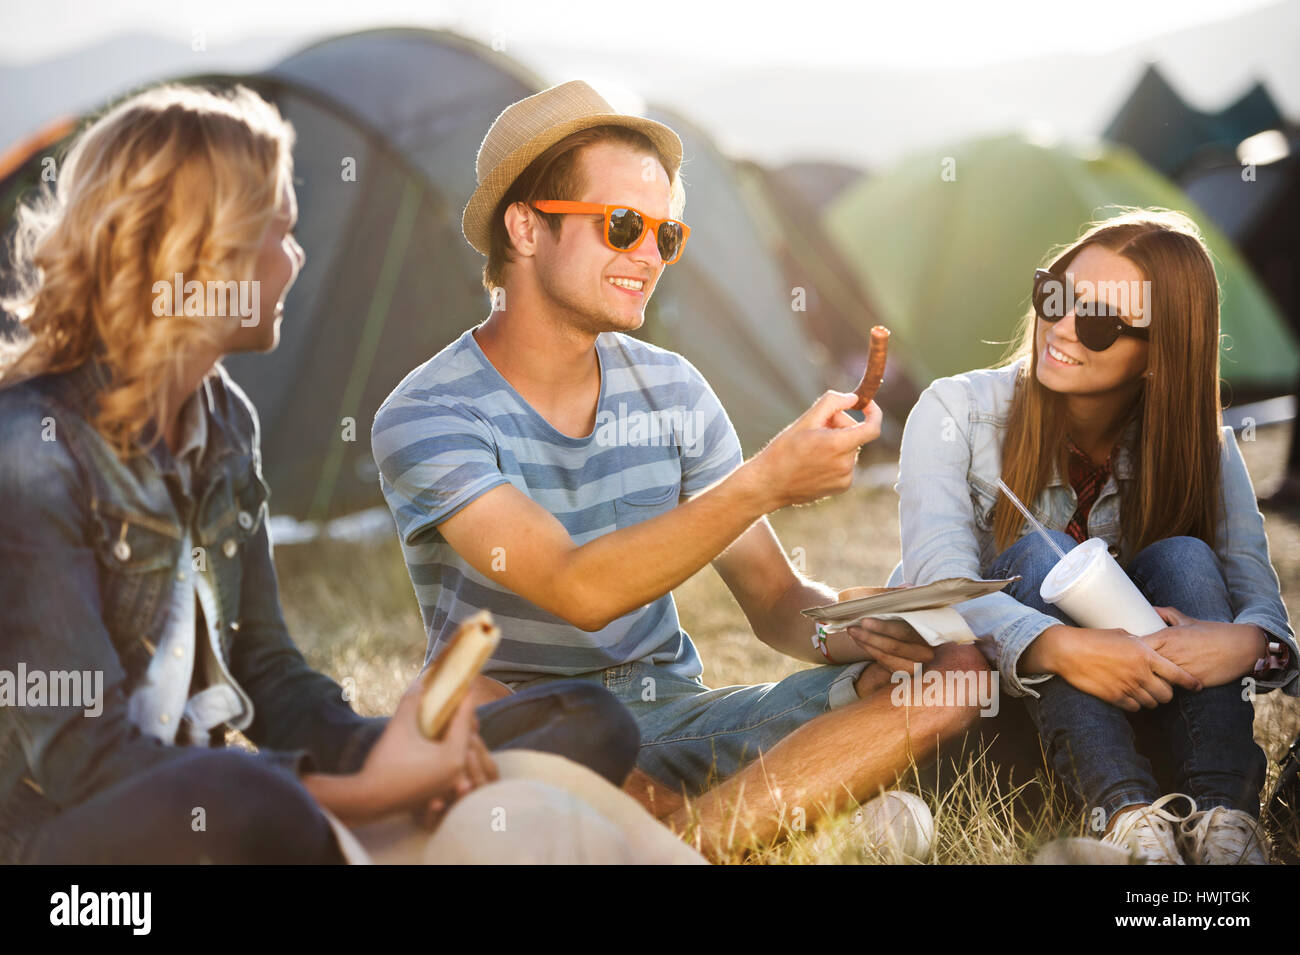 Gruppe von Teenager-Jungen und Mädchen im Sommer-Musikfestival, sitzen auf dem Boden vor Zelten Essen Stockfoto